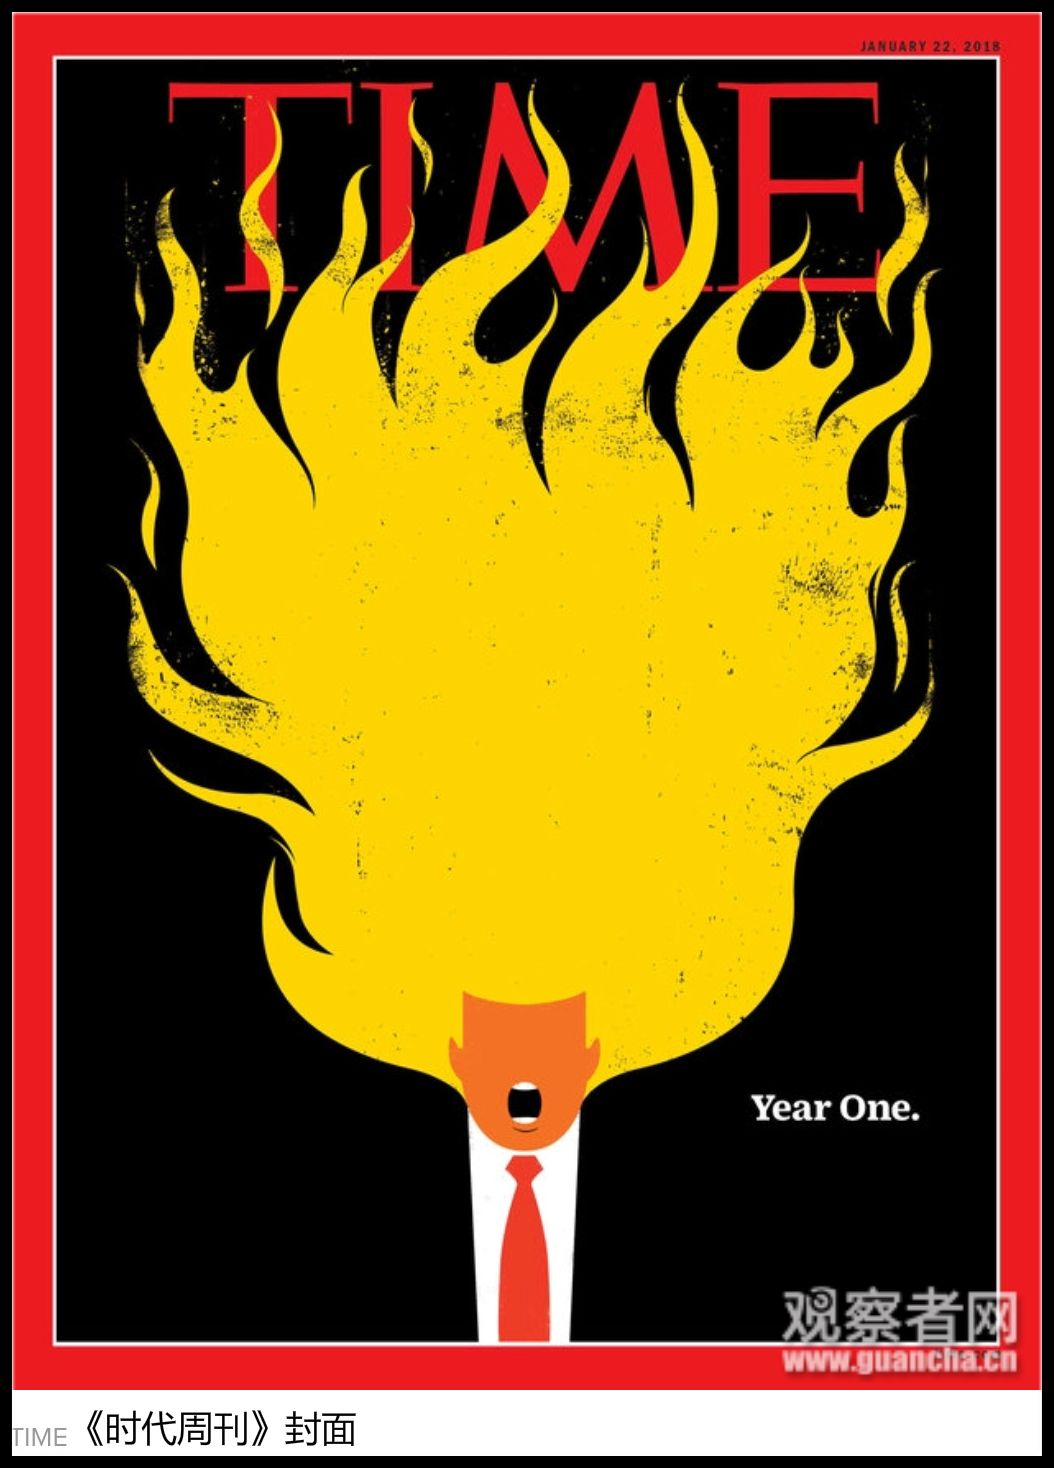 特朗普就职将满一年 《时代》祭出这张封面